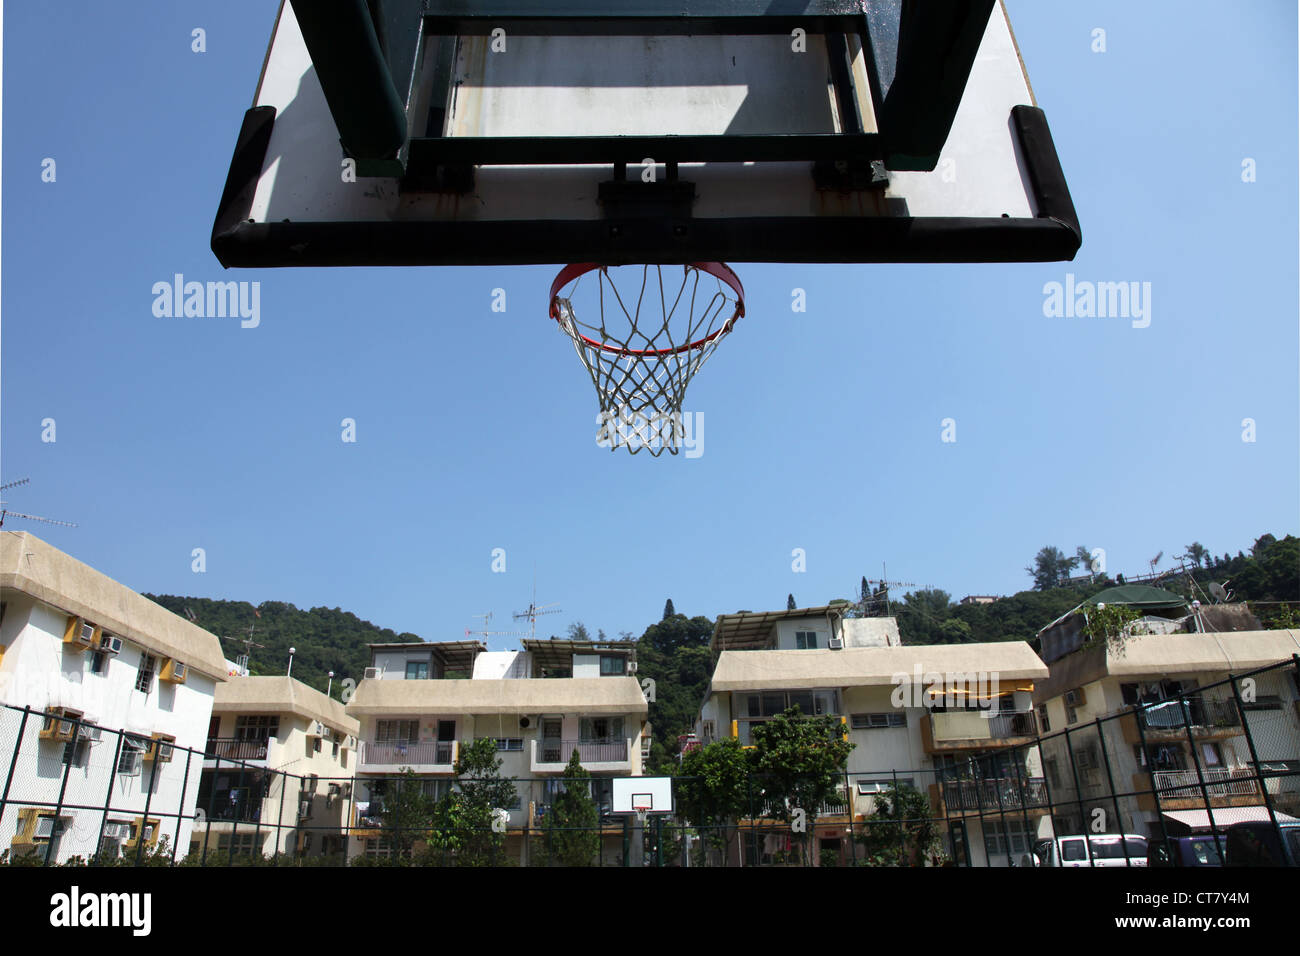 Es ist ein Foto von einem Basketball Korb Untersicht in einem Dorf von Hong  Kong. Der Himmel ist blau mit sehr schönem Wetter Stockfotografie - Alamy